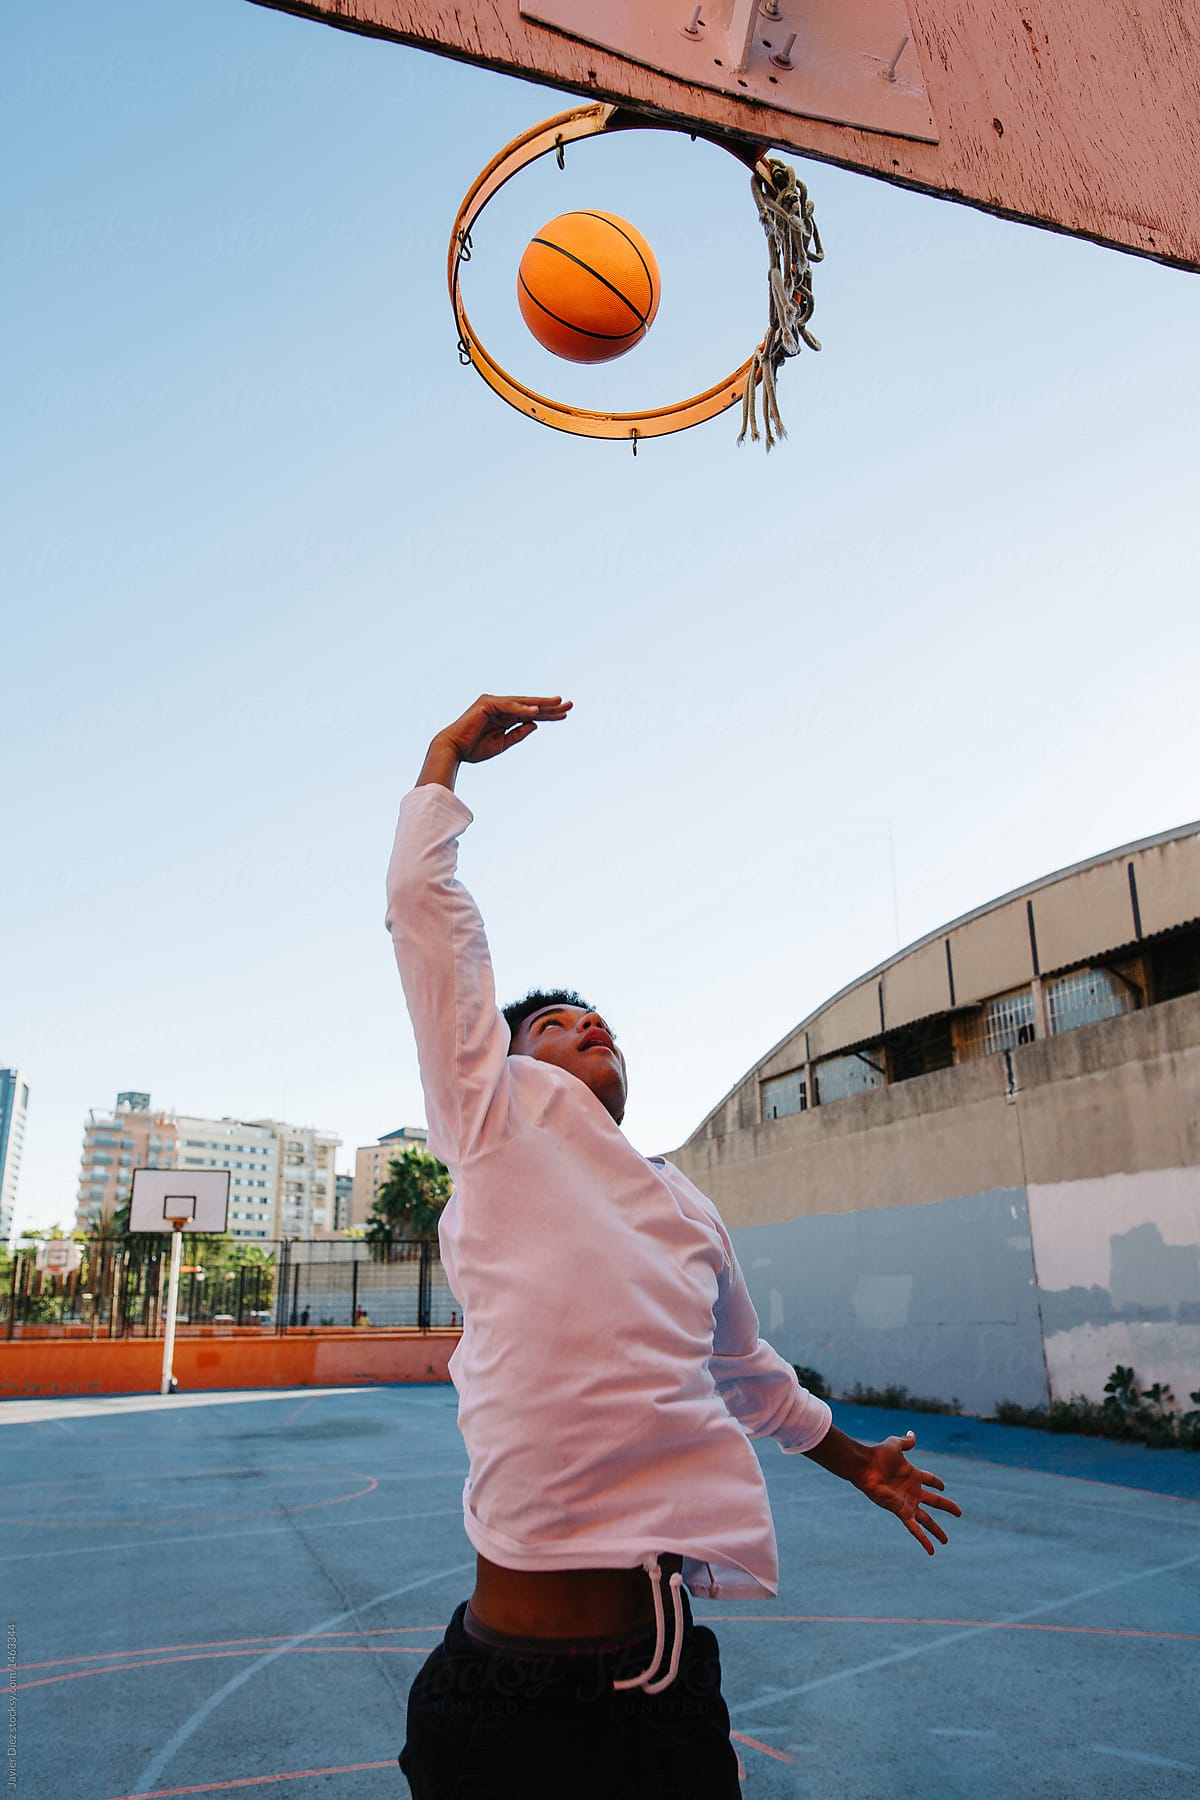 Man throwing ball in basket